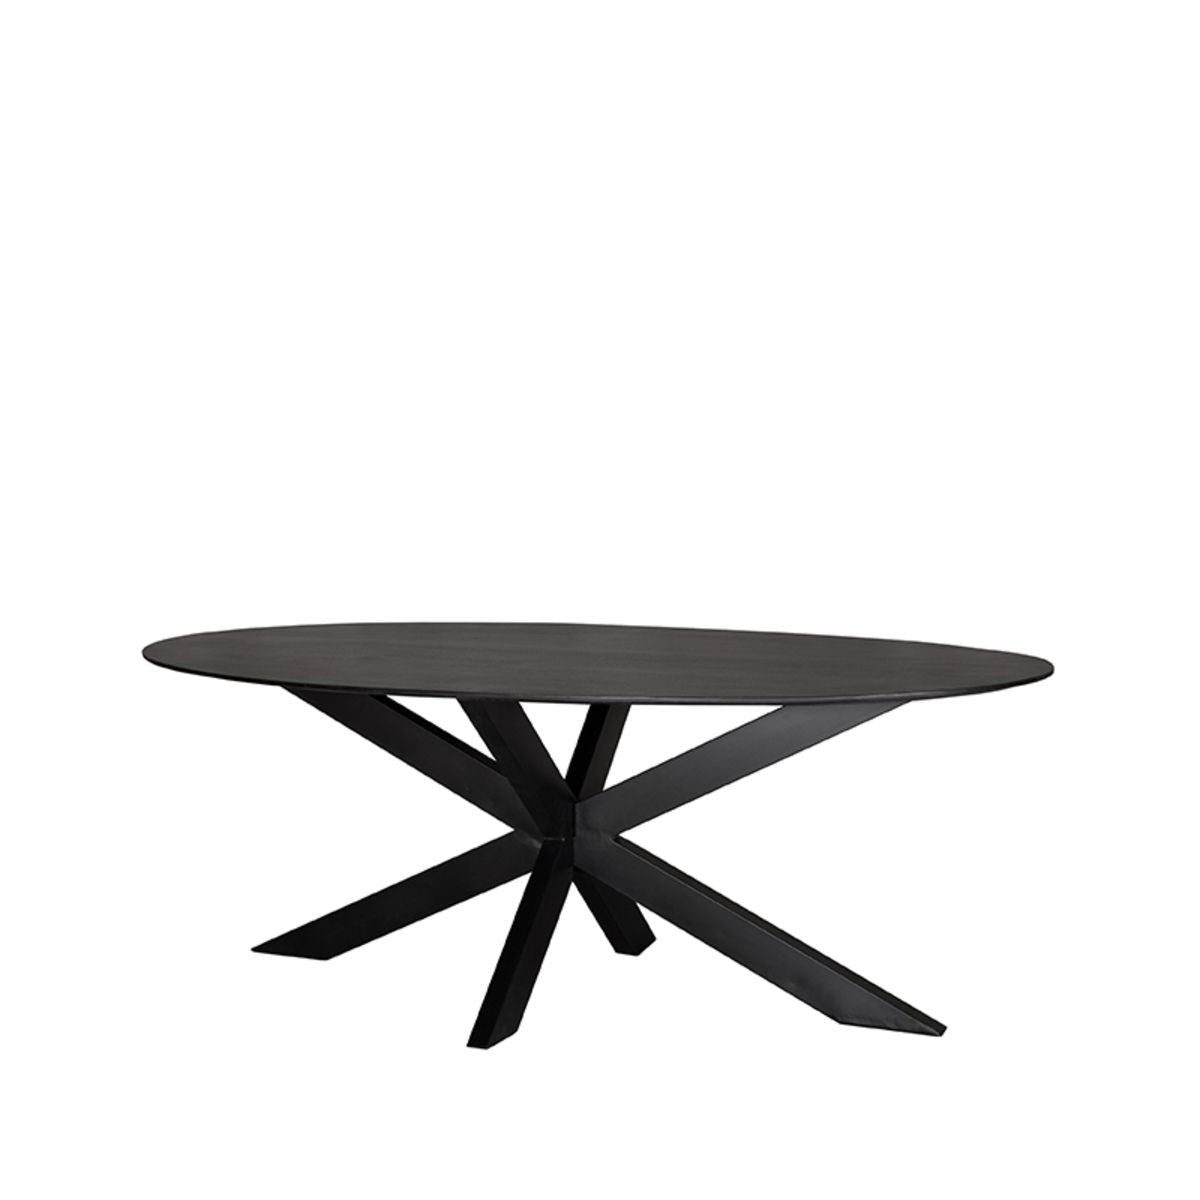 Mesa de comedor oval de color negro.